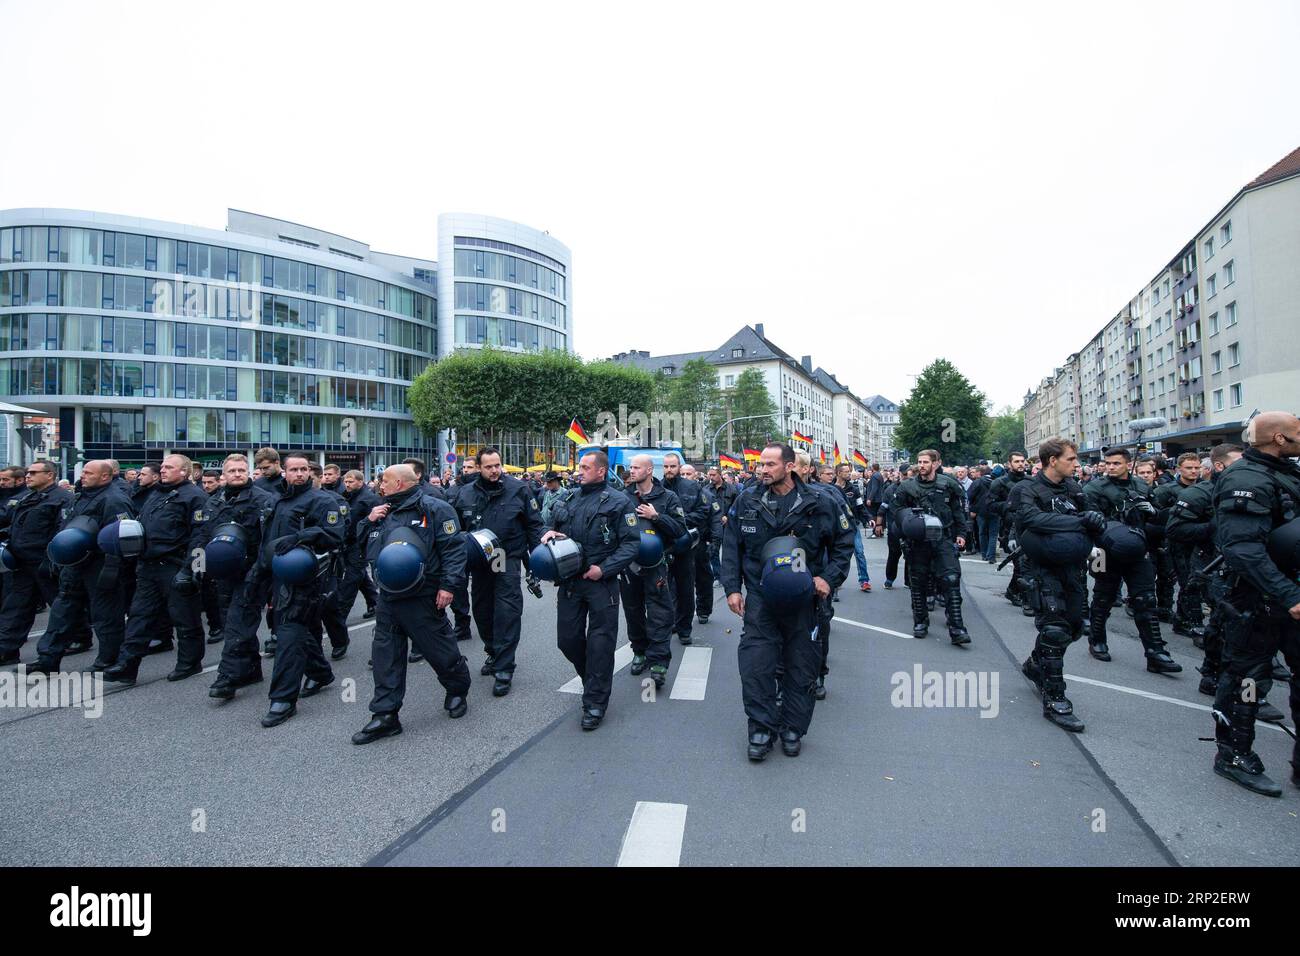 (180902) -- CHEMNITZ, 2 septembre 2018 -- des policiers gardent le site d'une manifestation à Chemnitz, dans l'est de l'Allemagne, le 1 septembre 2018. Environ 8 000 personnes sont descendues dans les rues de la ville allemande de Chemnitz samedi, y compris des partisans du parti de droite AfD et des initiatives xénophobes, et des personnes qui protestent contre la xénophobie, a rapporté l'Agence de presse allemande (DPA). (YY) ALLEMAGNE-CHEMNITZ-PROTESTATIONS KevinxVoigt PUBLICATIONxNOTxINxCHN Banque D'Images